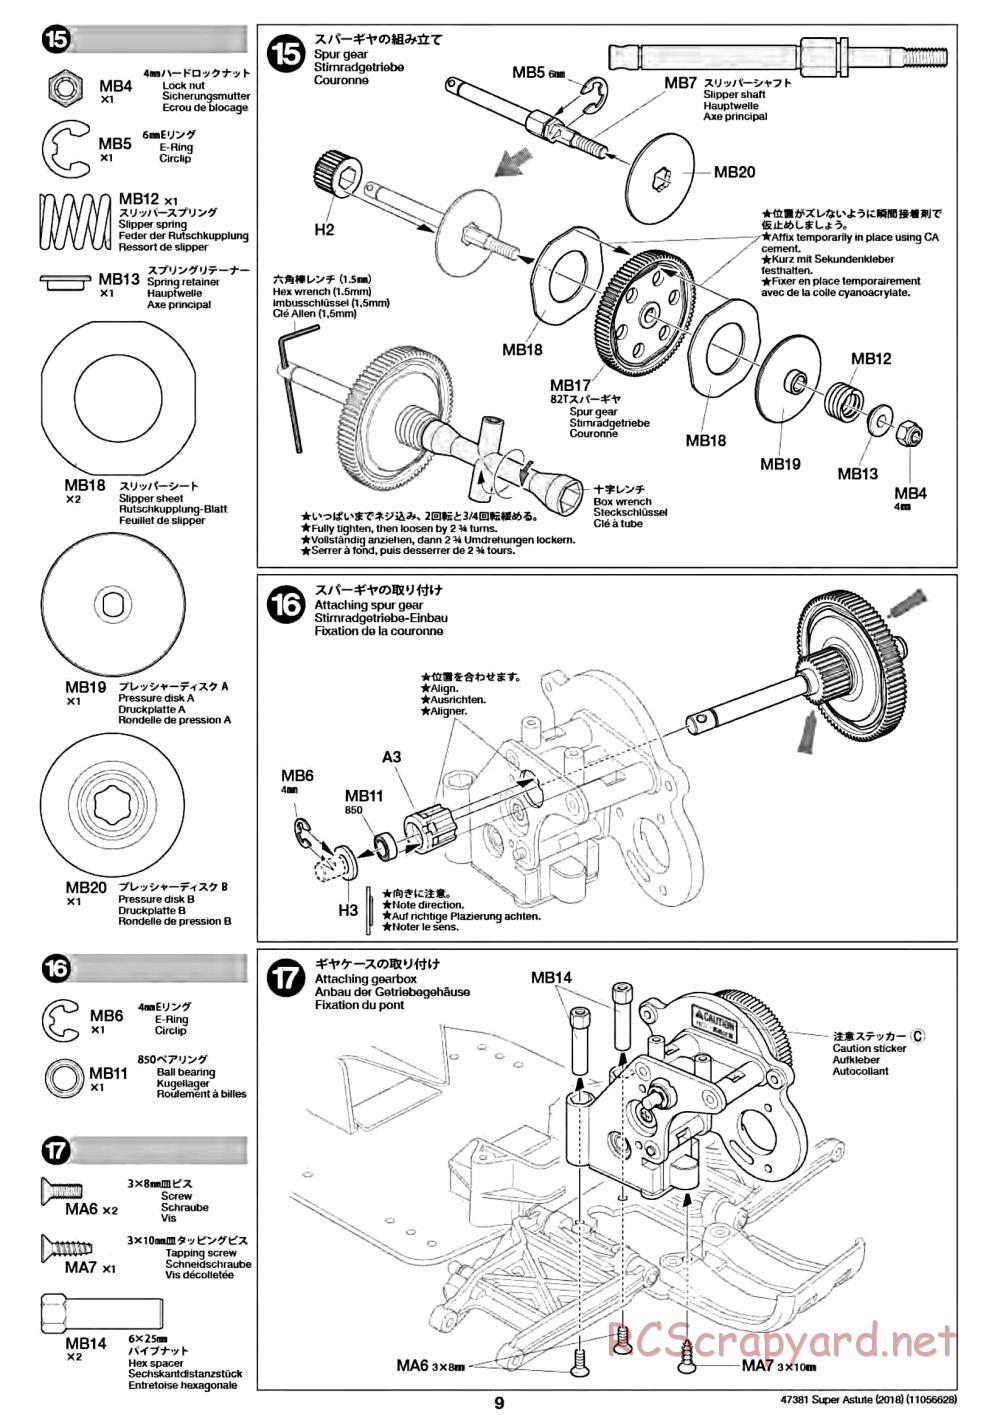 Tamiya - Super Astute (2018) Chassis - Manual - Page 9